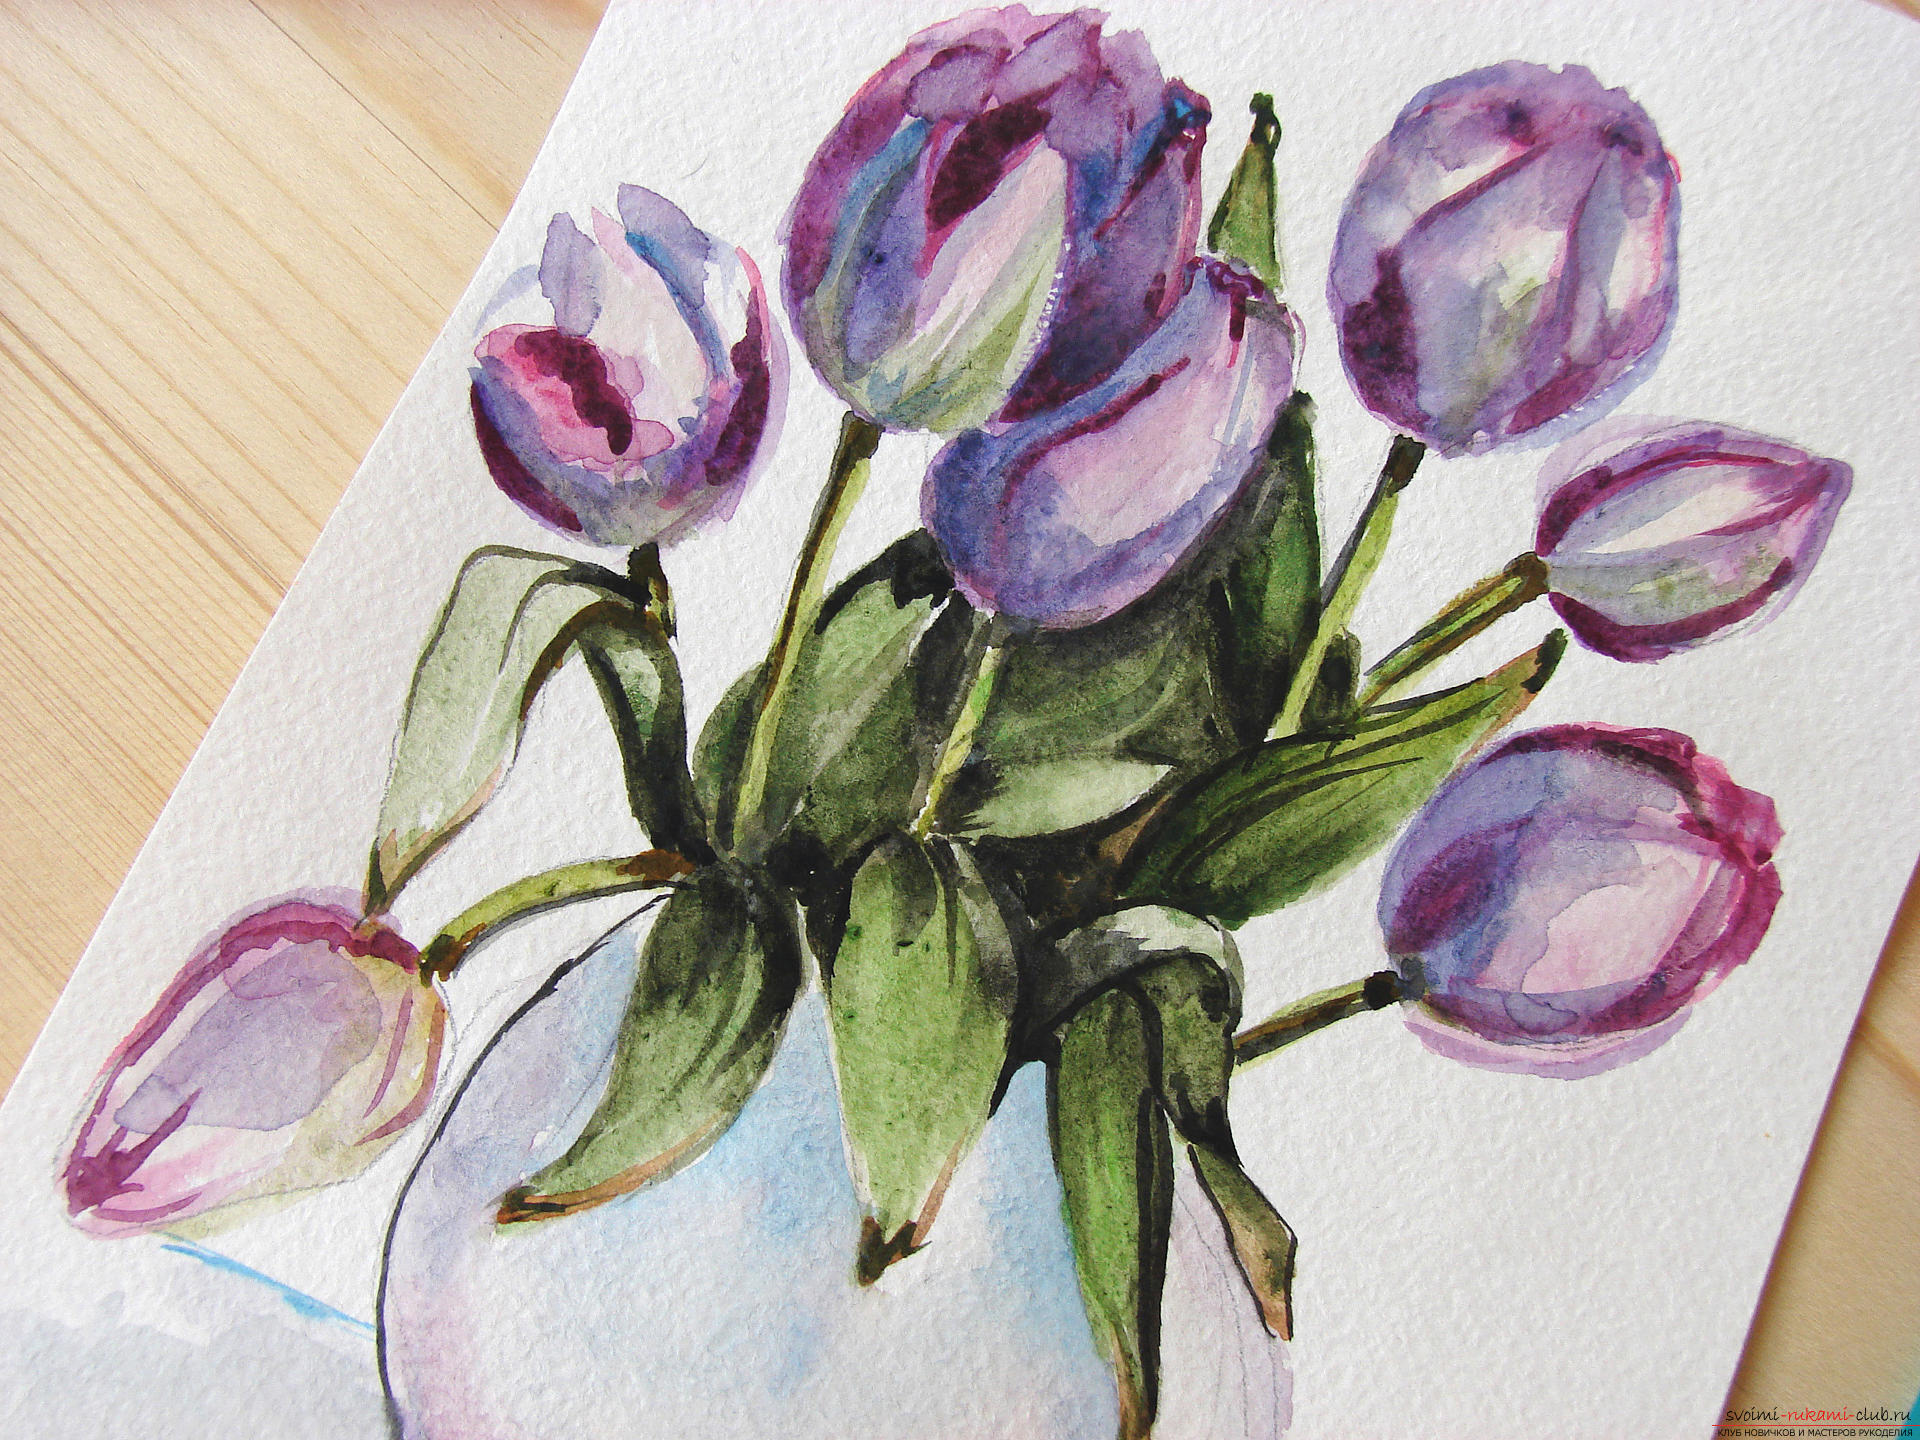 Мастер-класс по рисованию с фото научит как нарисовать цветы, подробно описав как рисуются тюльпаны поэтапно.. Фото №24